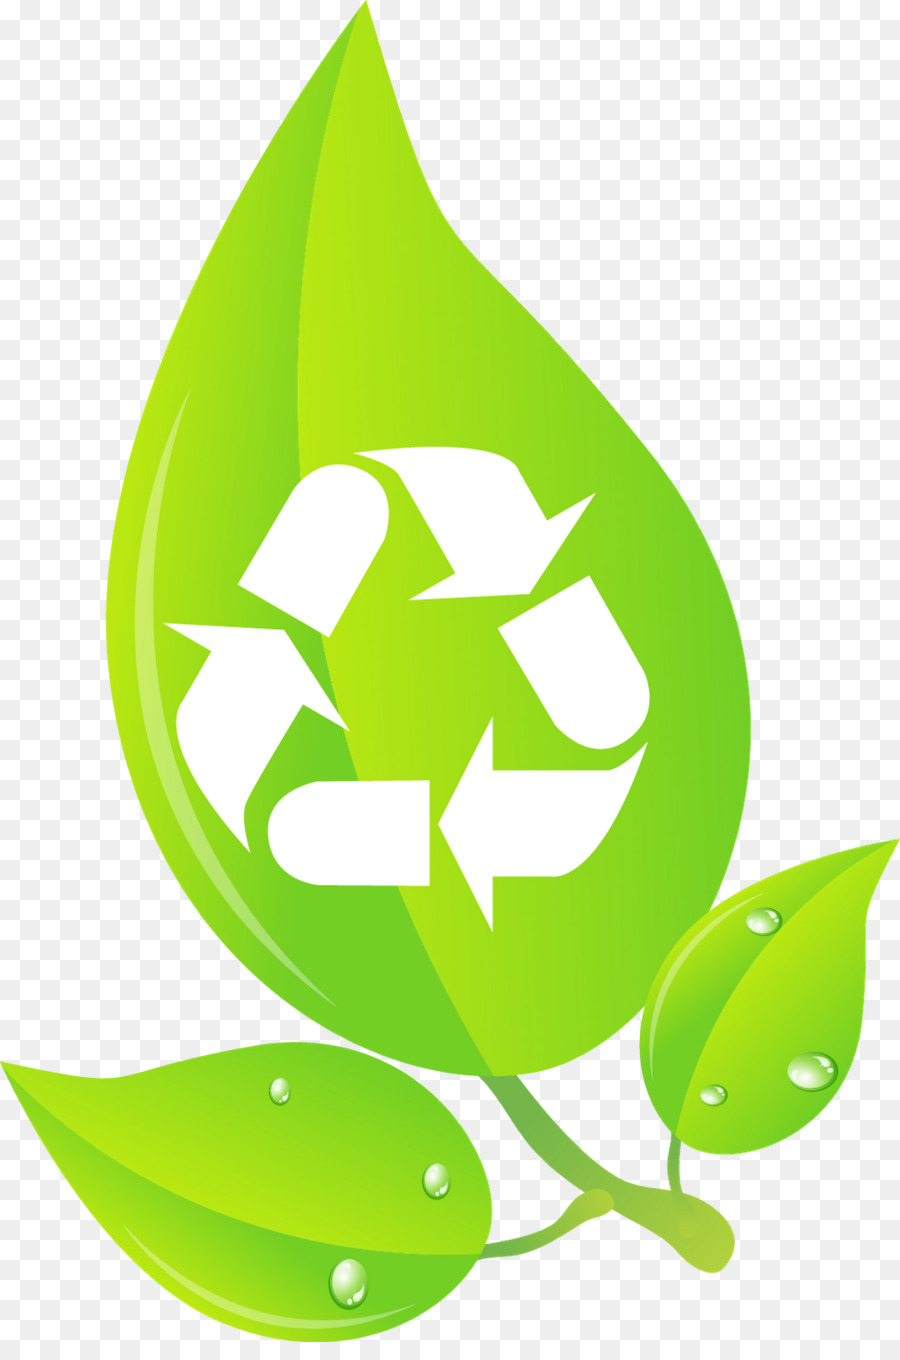 Scomparto di riciclaggio Bidoni della Spazzatura & Cestini per la Carta simbolo del Riciclaggio - cibo concetto di logo